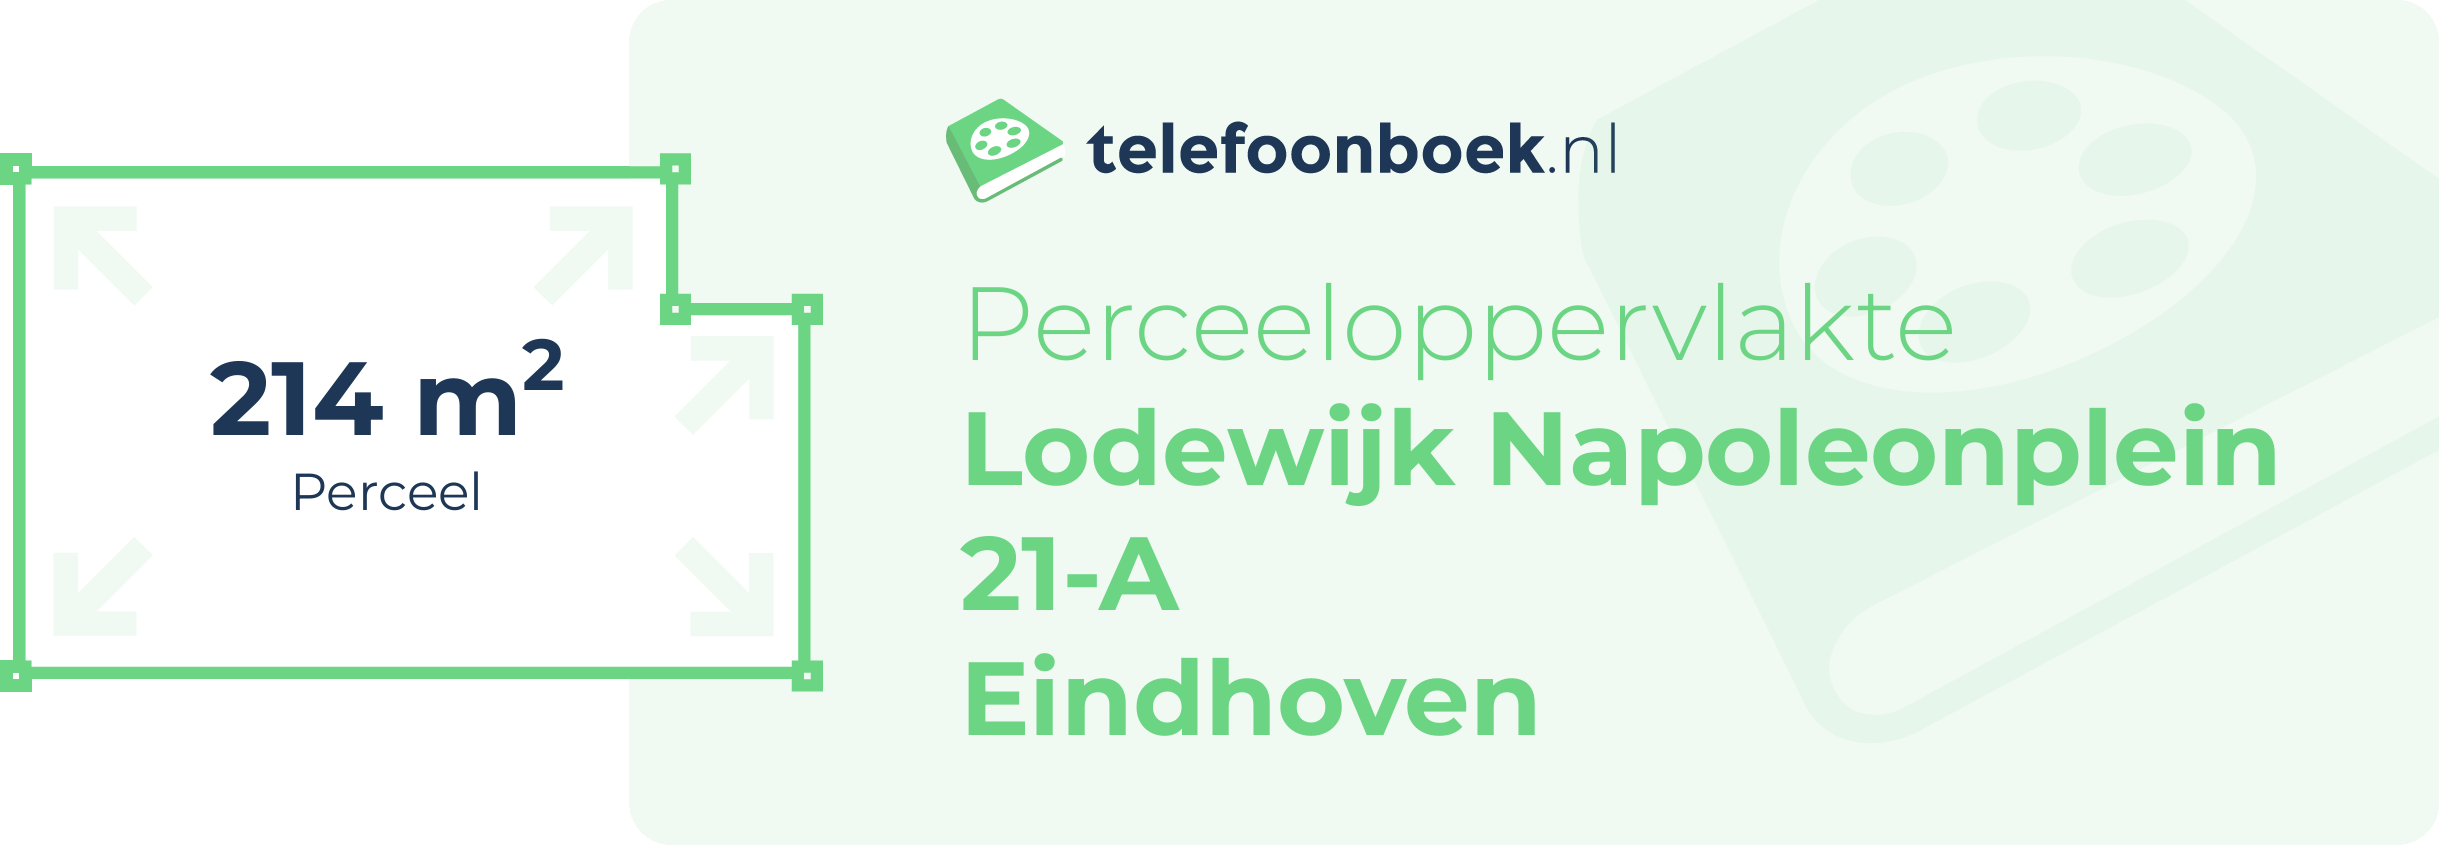 Perceeloppervlakte Lodewijk Napoleonplein 21-A Eindhoven